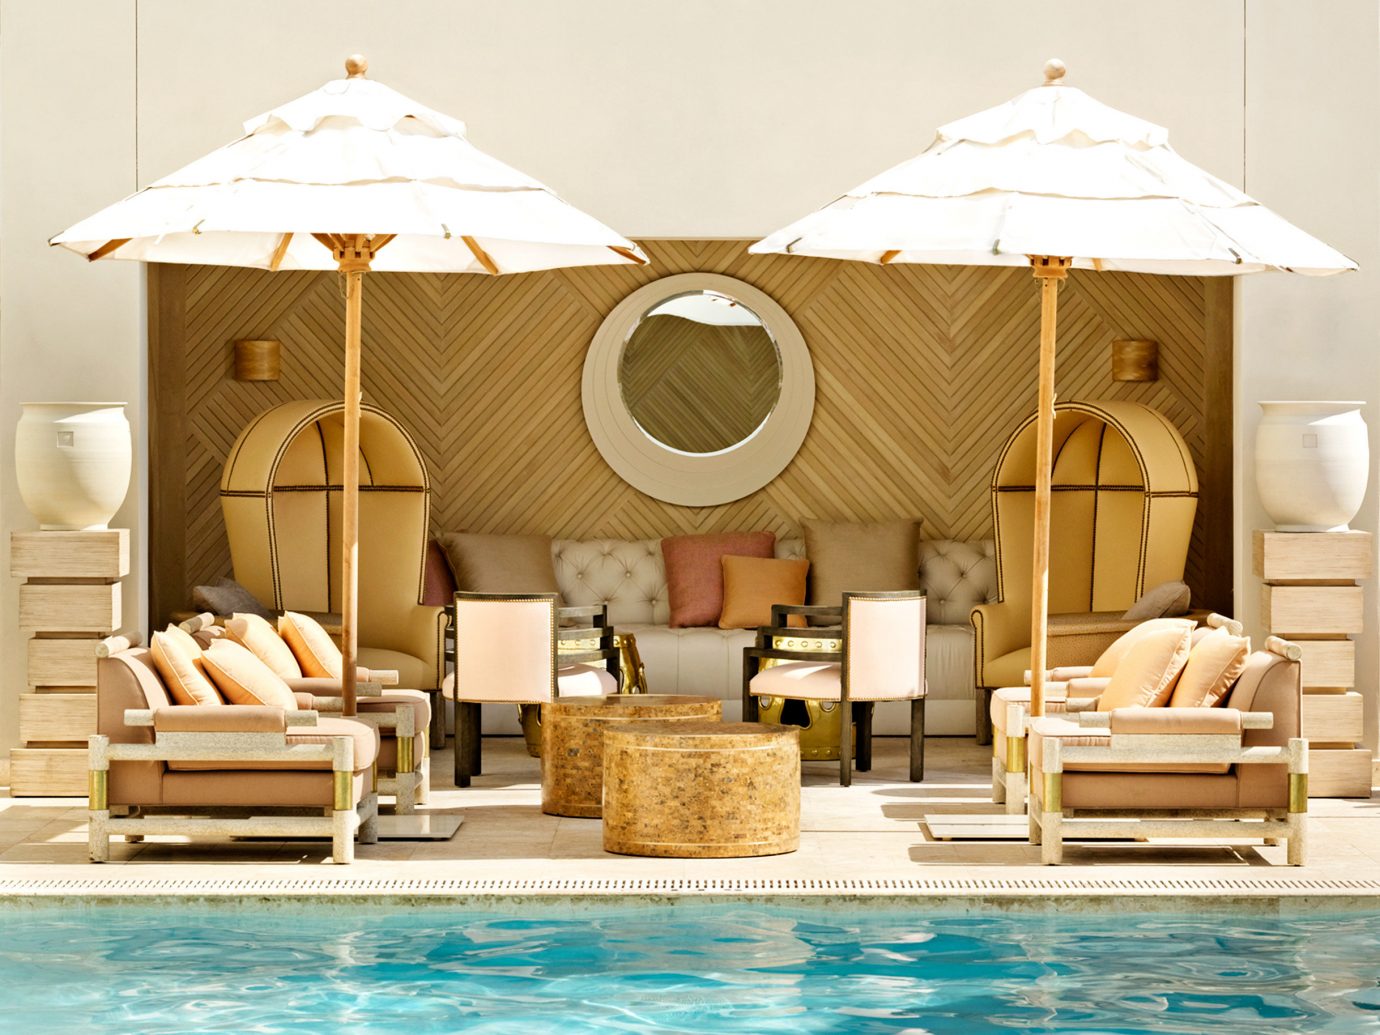 Design Lounge Play Pool Resort Trip Ideas Weekend Getaways indoor swimming pool leisure gazebo